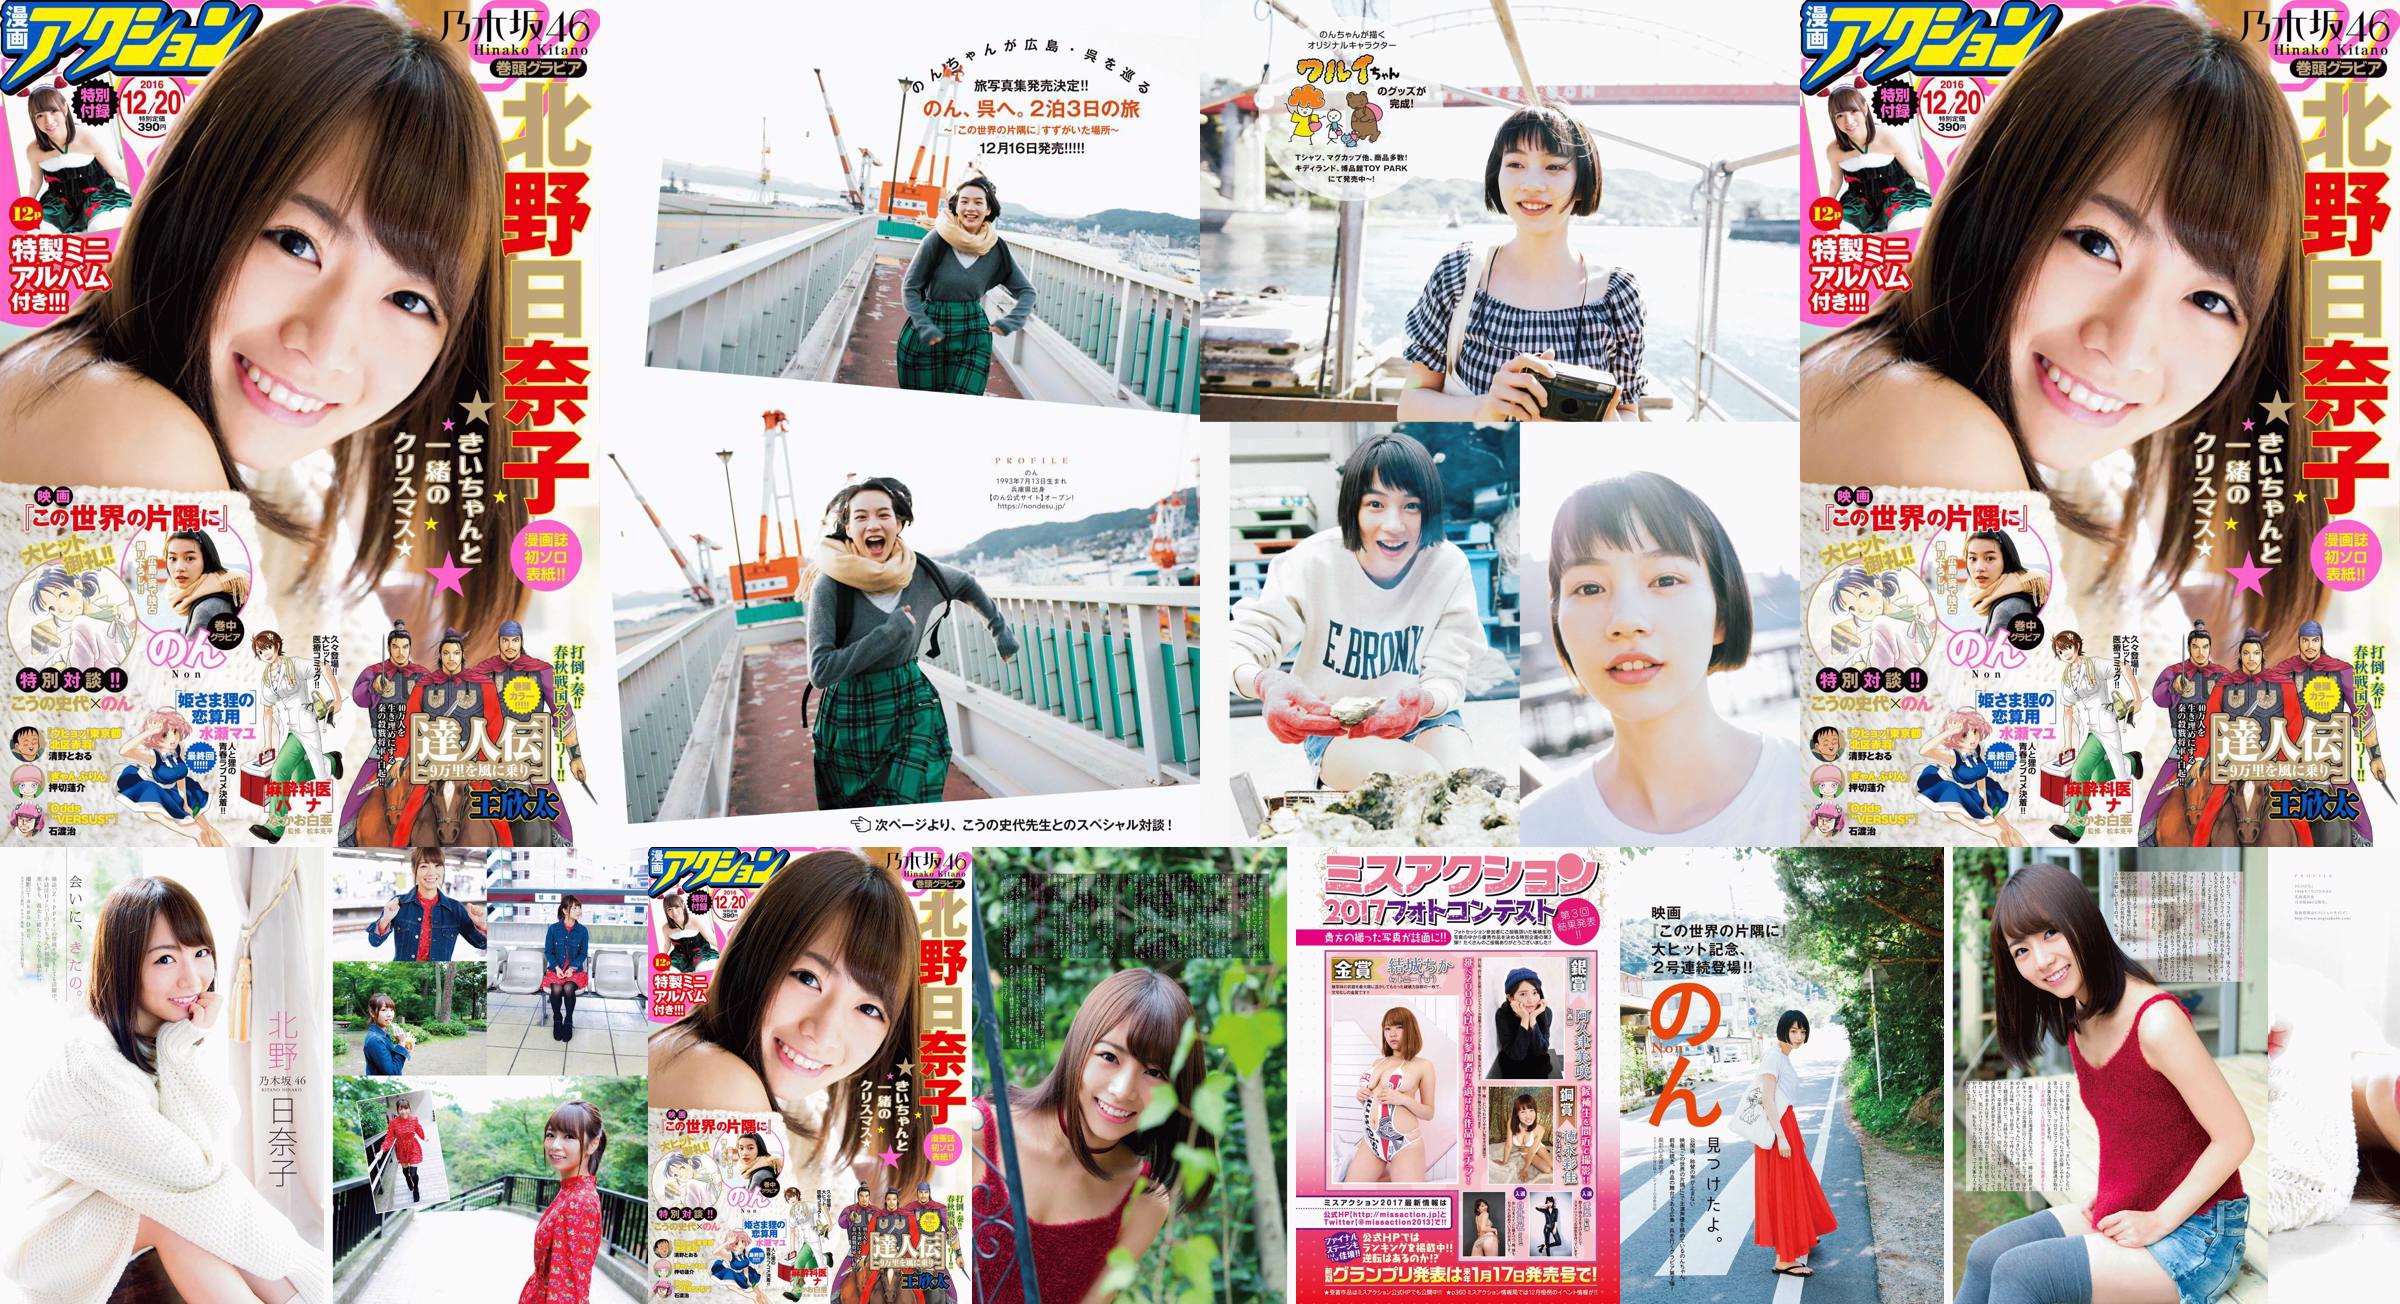 [Manga Action] Kitano Hinako のん 2016 No.24 Photo Magazine No.e89fd3 Página 5